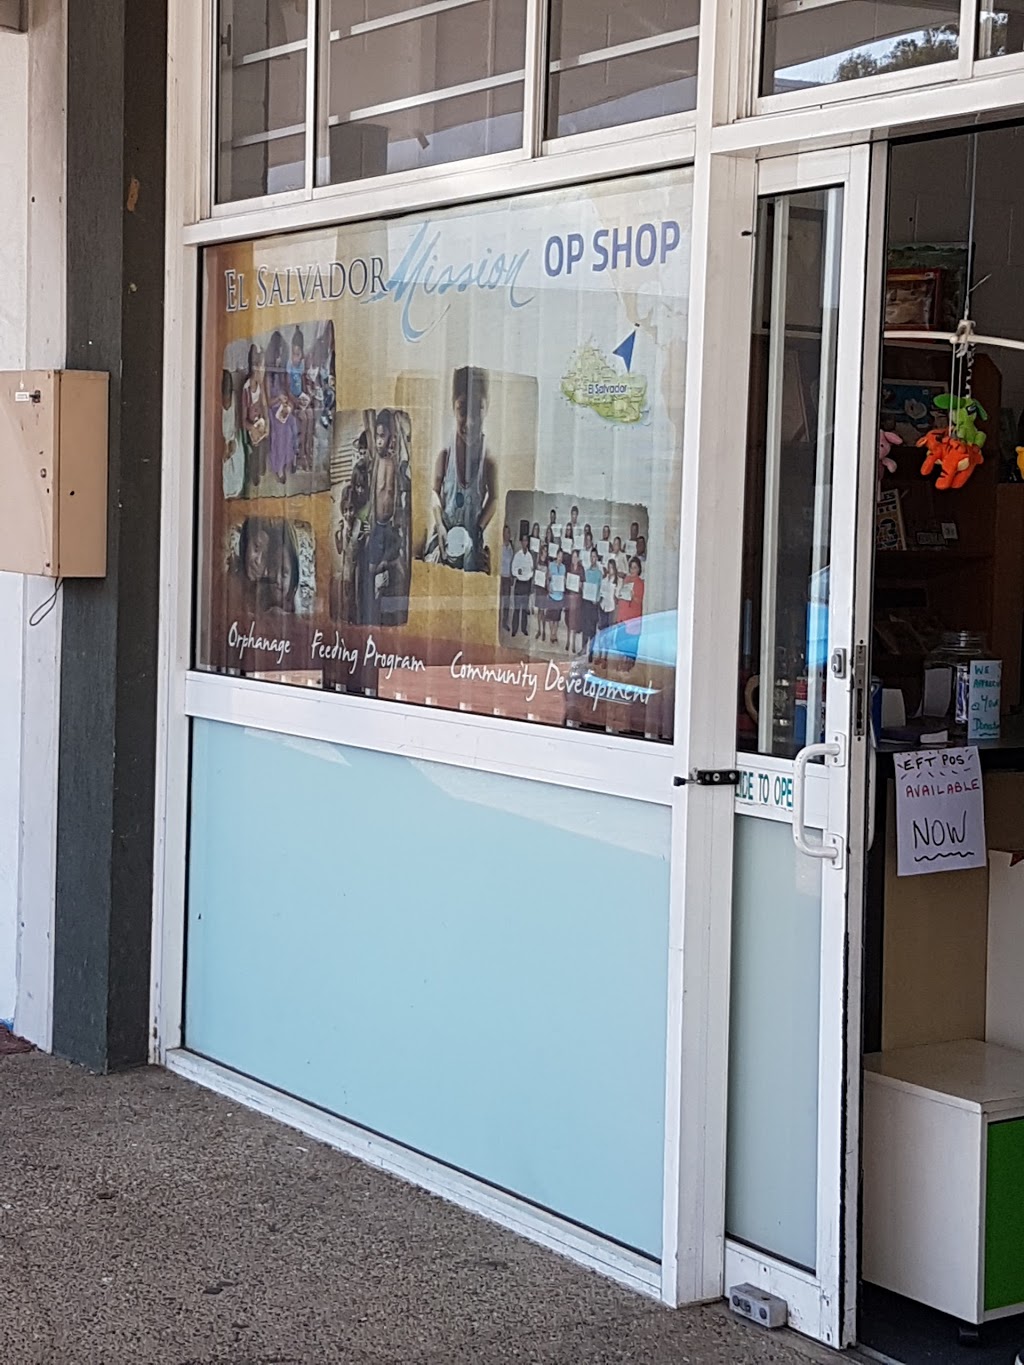 El Salvador Mission Op Shop | store | 27 Barklya Pl, Marsden QLD 4132, Australia